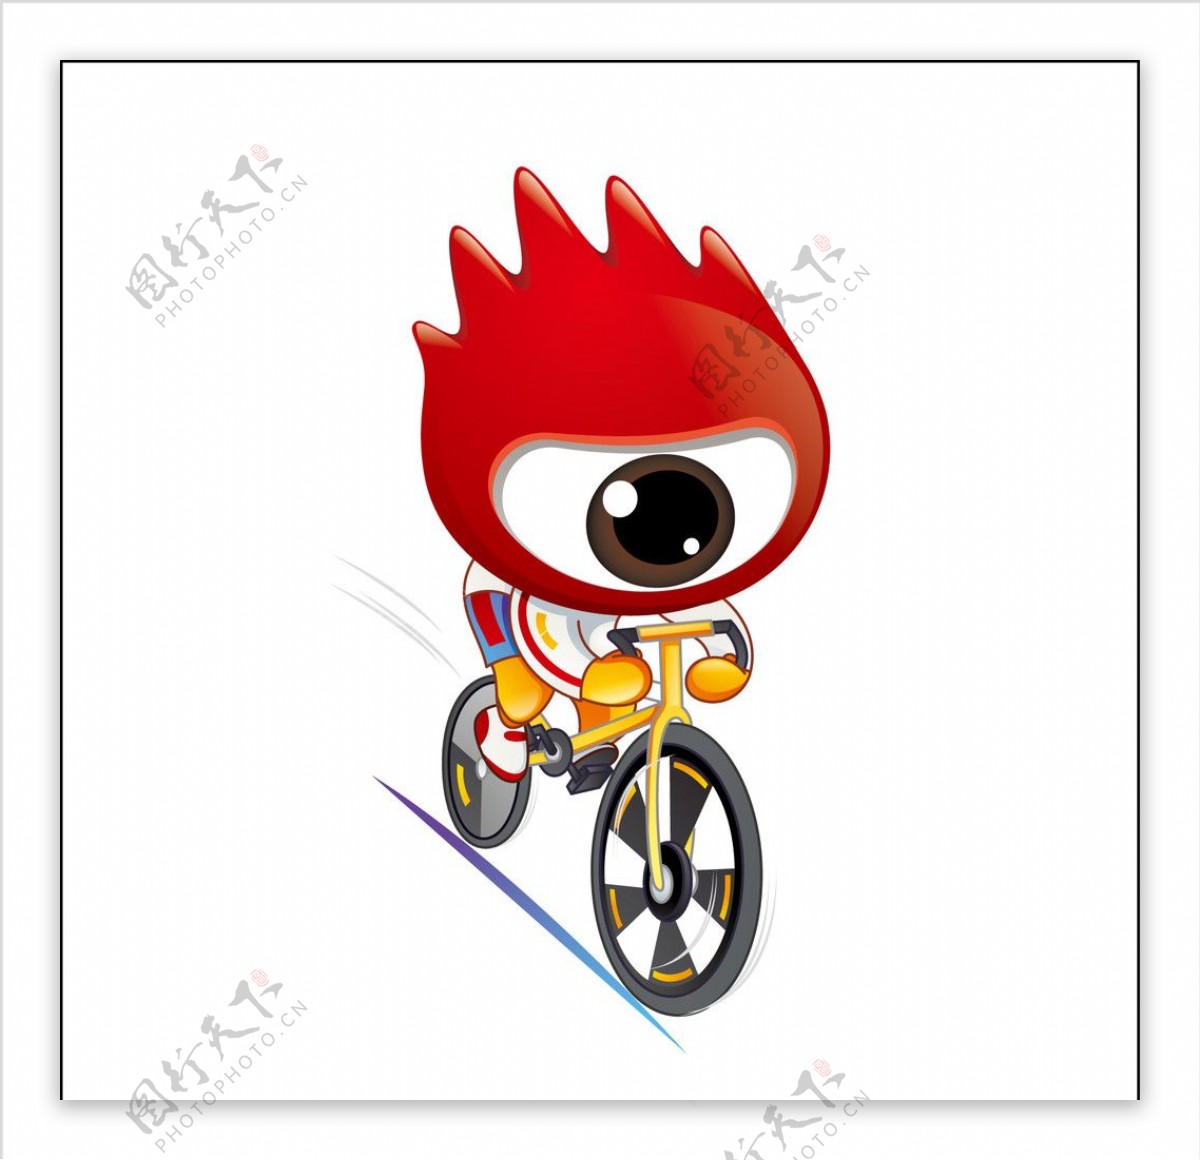 2008北京奥运男子自行车小浪人矢量素材图片